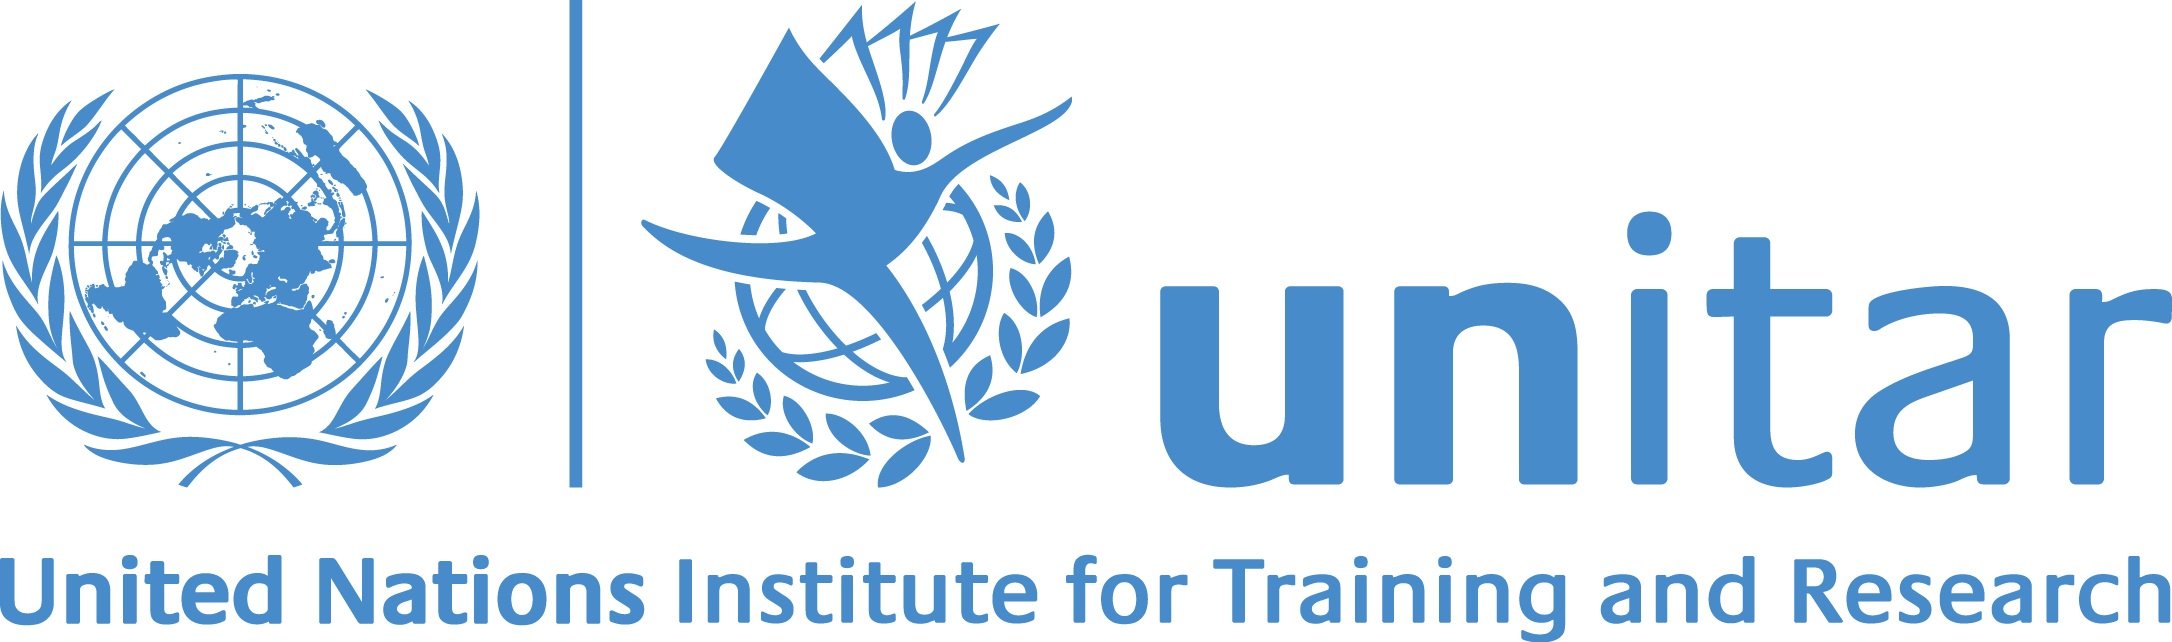 UNITAR+logo.jpg